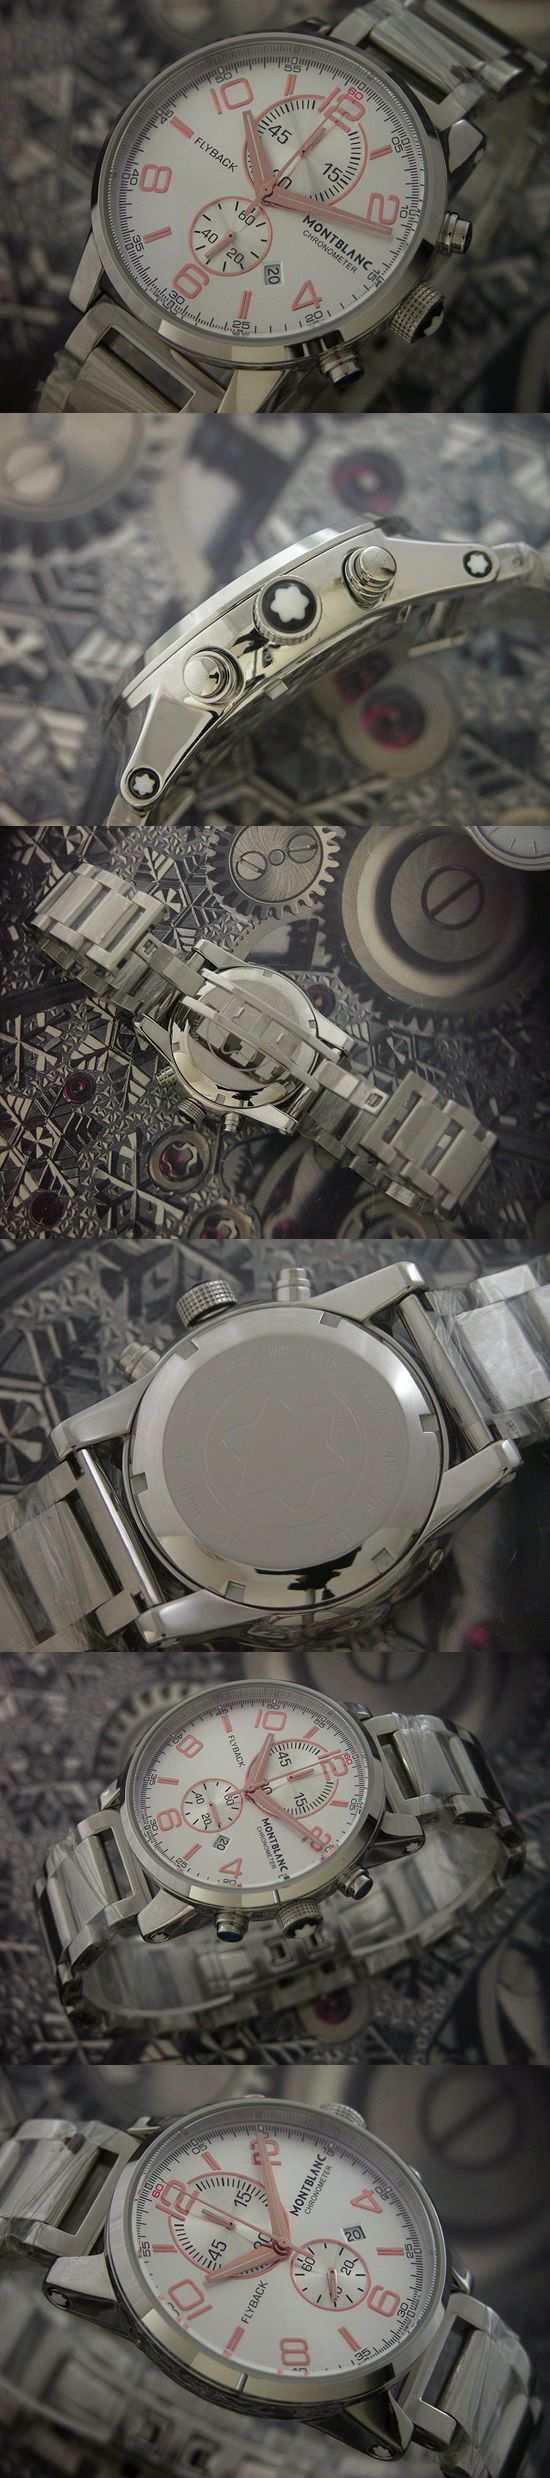 おしゃれなブランド時計がモンブラン-MONTBLANC-日本チップ-MO00016J 男性用腕時計を提供します.